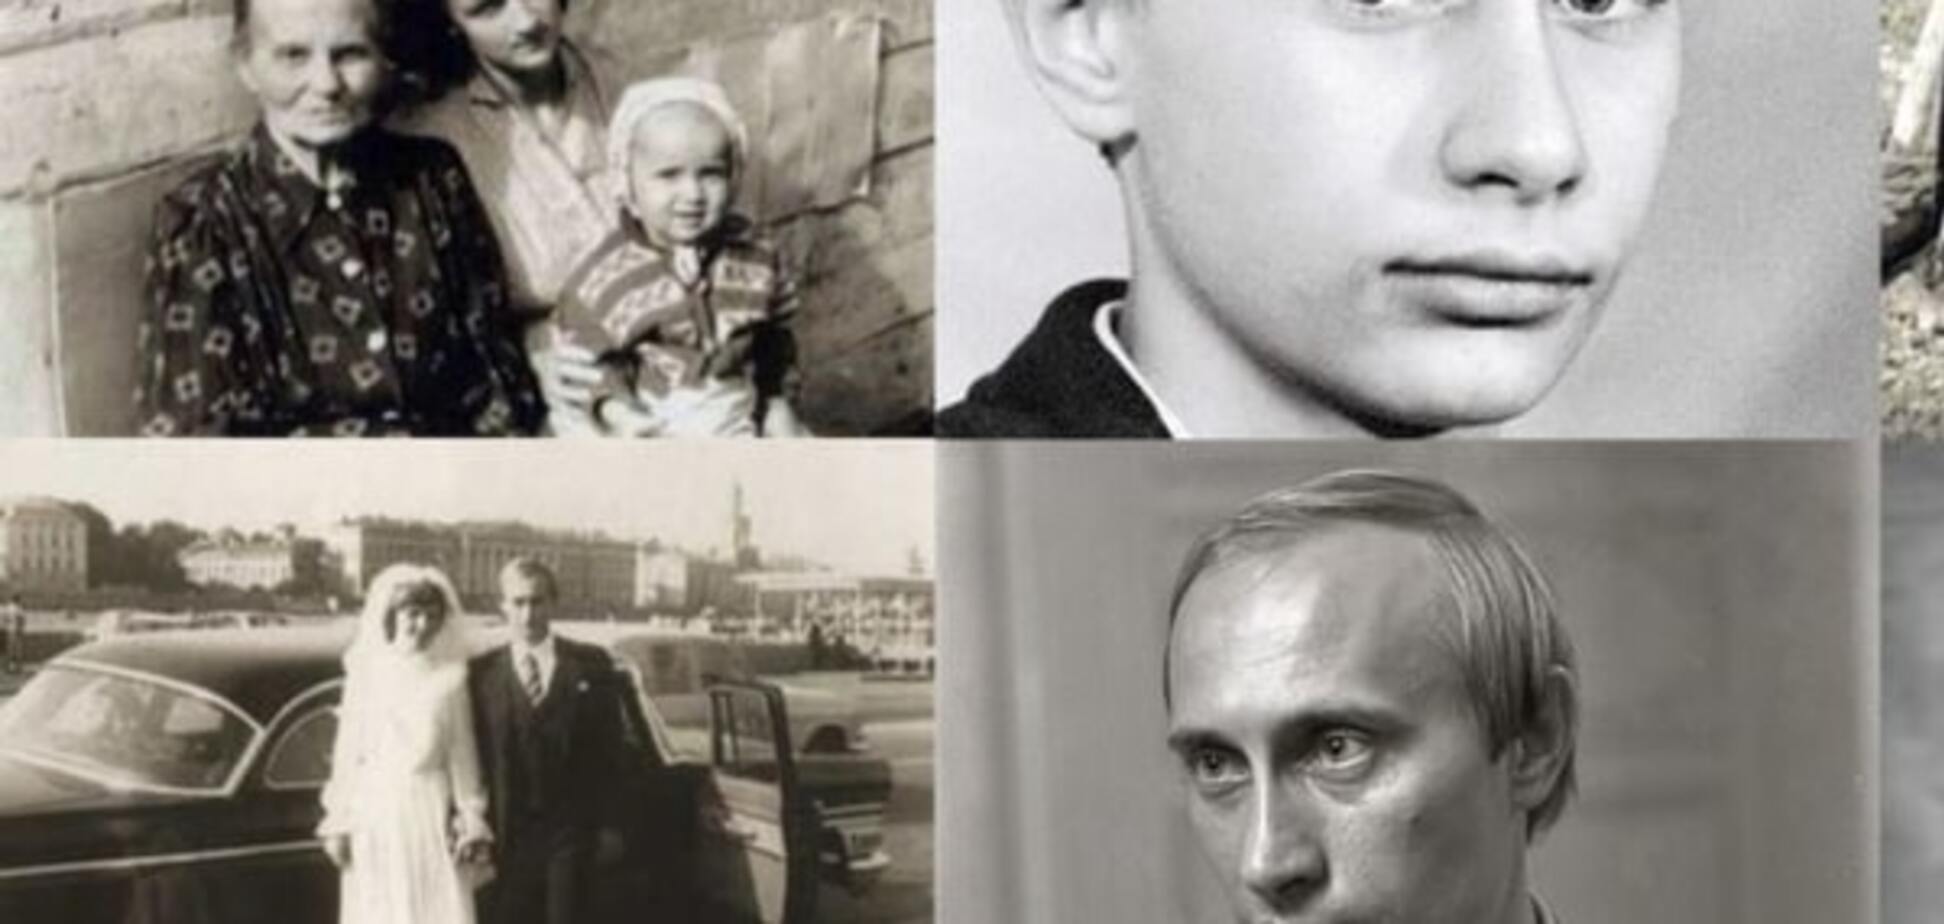 Як жила сім'я Путіна: в мережі показали архівні фото